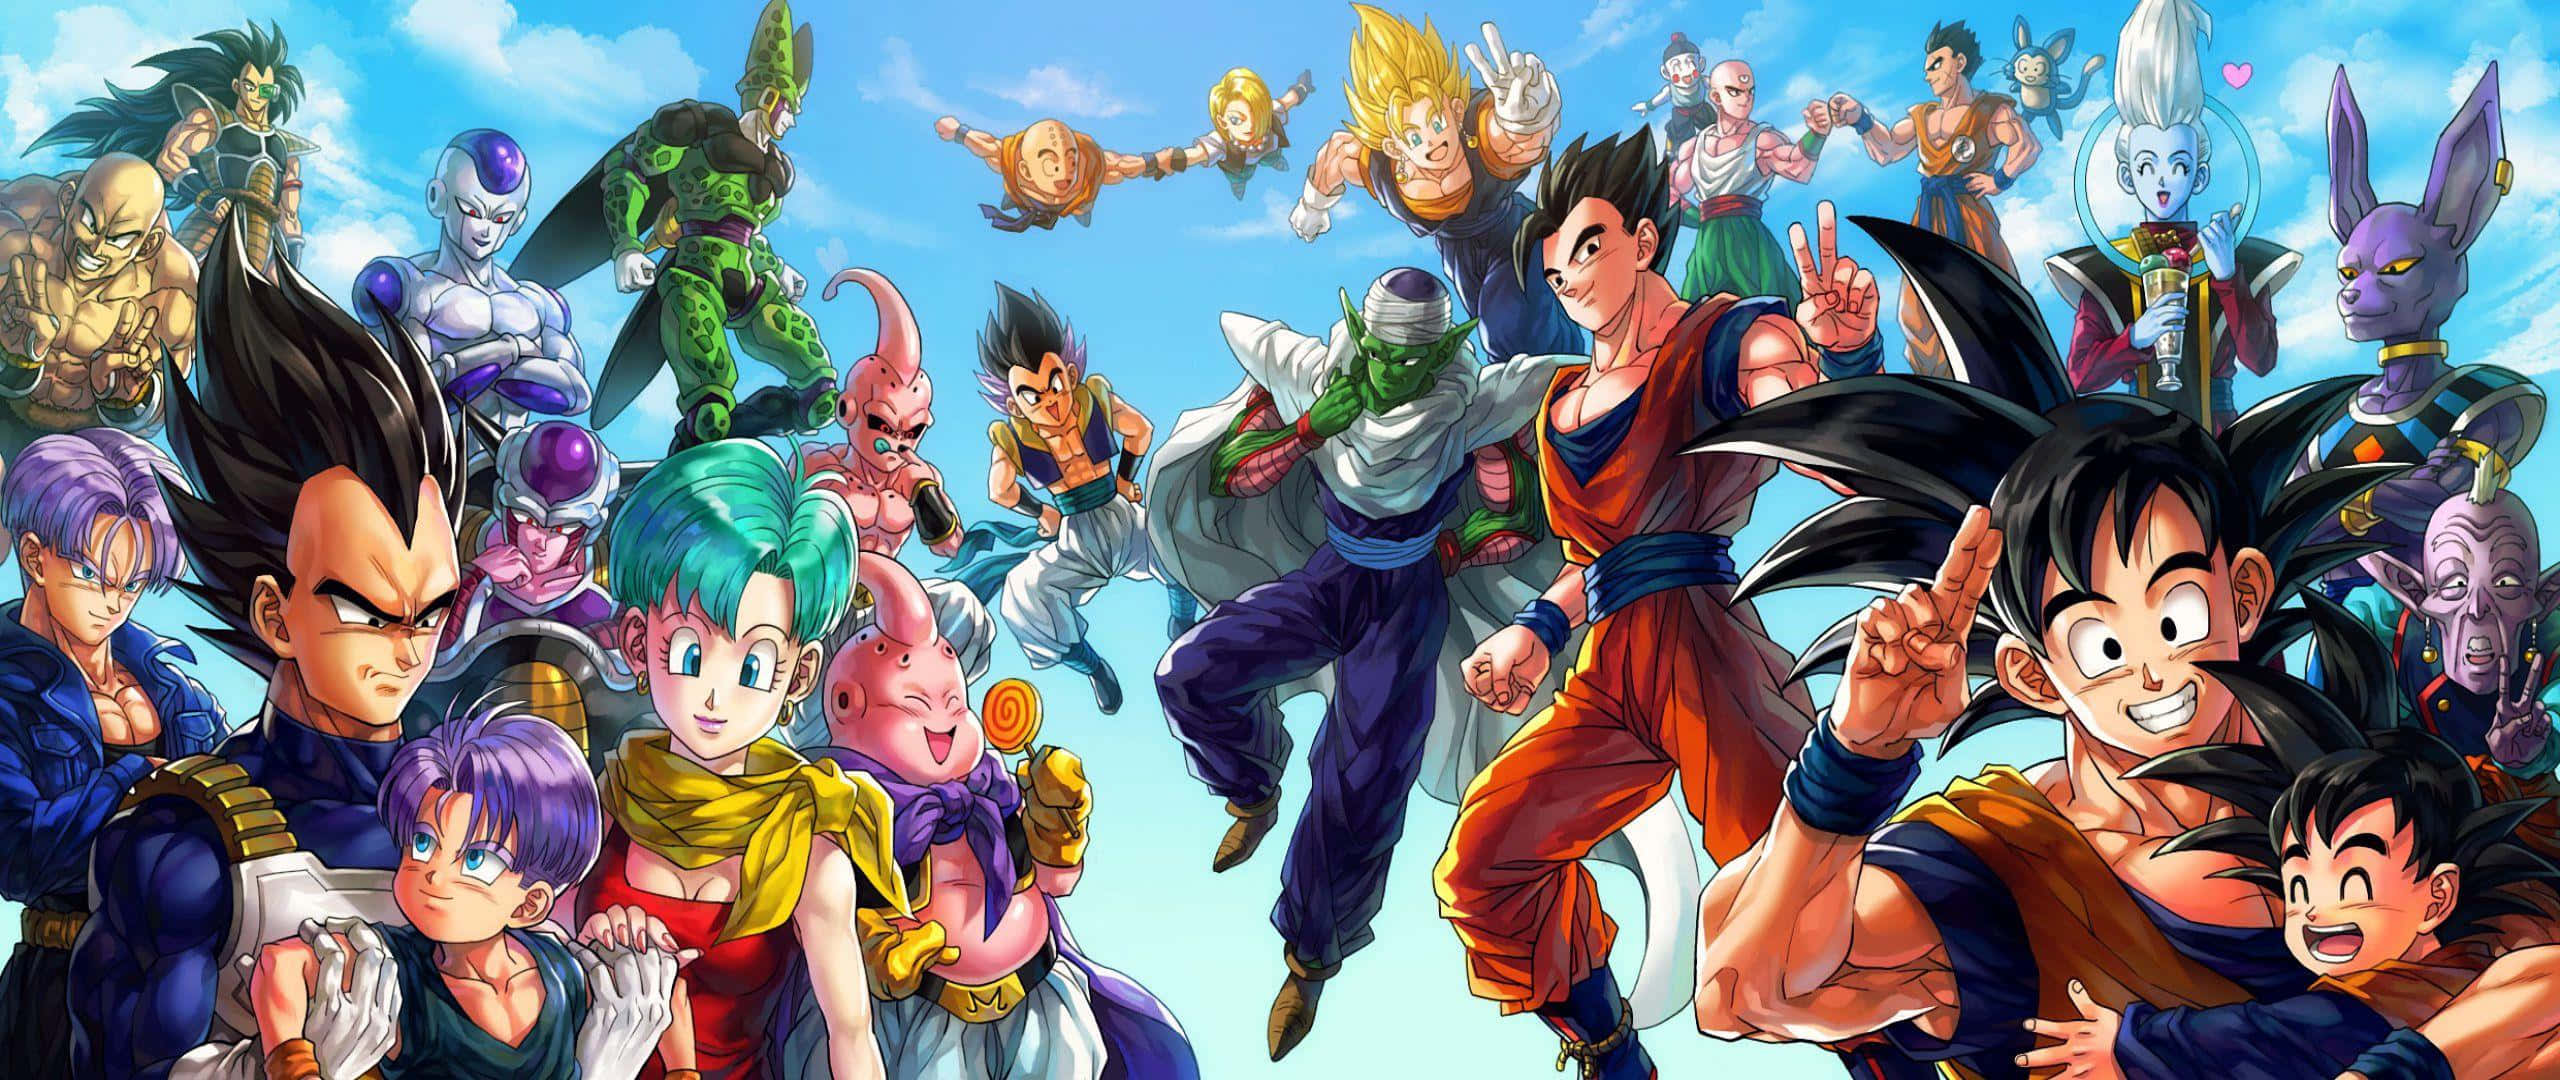 Slutdig Til Kræfterne Med Goku Og Z-kæmperne, Mens De Beskytter Universet I Dragon Ball Super!